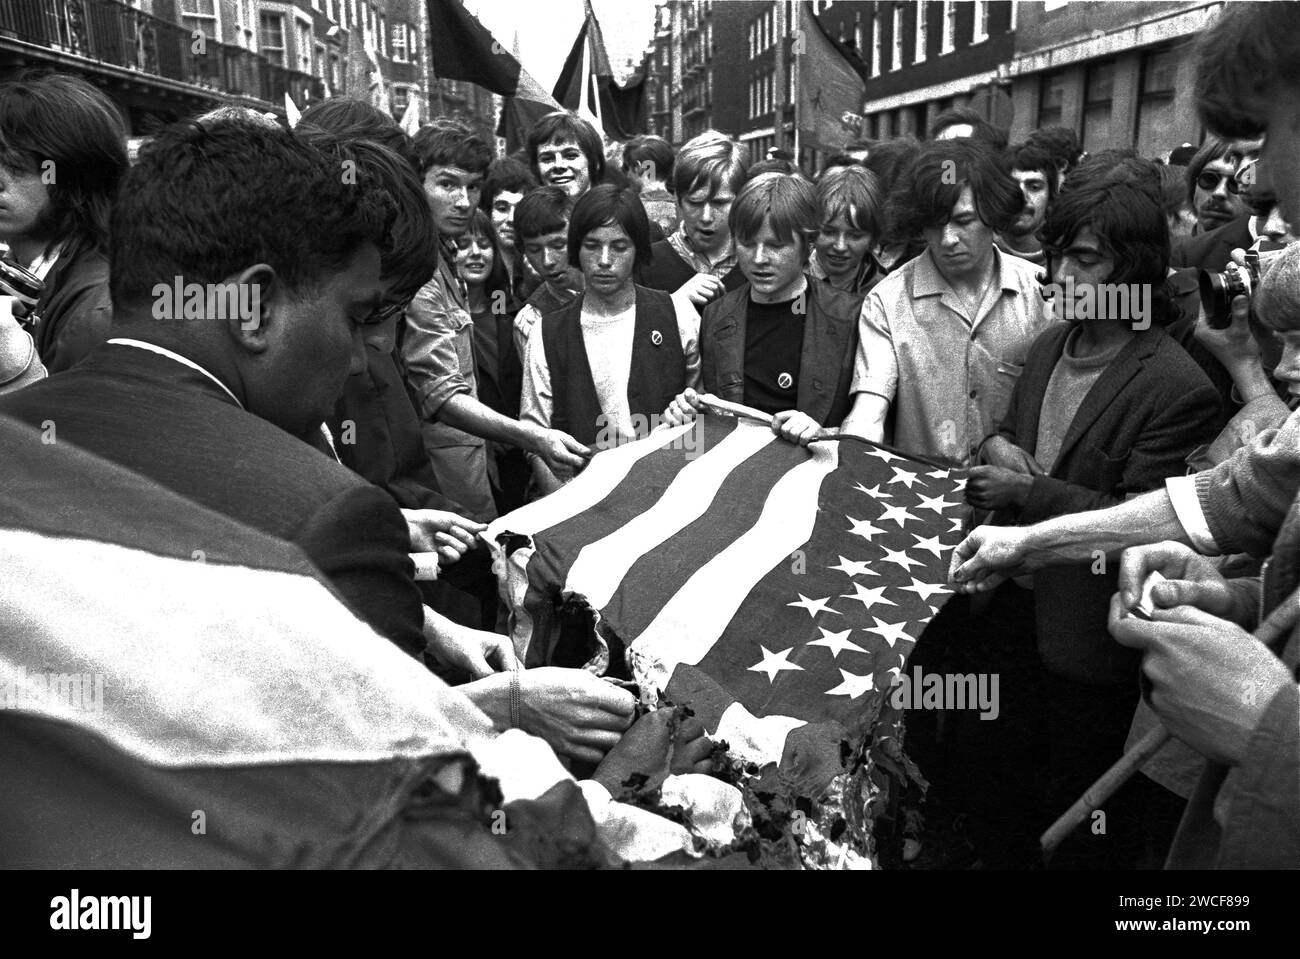 Demonstranten auf der Grosvenor Street in London versuchen, eine amerikanische Flagge in der Nähe der US-Botschaft auf dem Grosvenor Square beim Anti-Vietnam-protestmarsch am 17. März 1968 zu verbrennen. Aufgrund des gewalttätigen Zusammenstoßes zwischen Demonstranten und Polizei wurde dieser massive Protest als „die Schlacht am Grosvenor Square“ bekannt und war die Inspiration für das Lied „Street Fighting man“ der Rolling Stones. Stockfoto